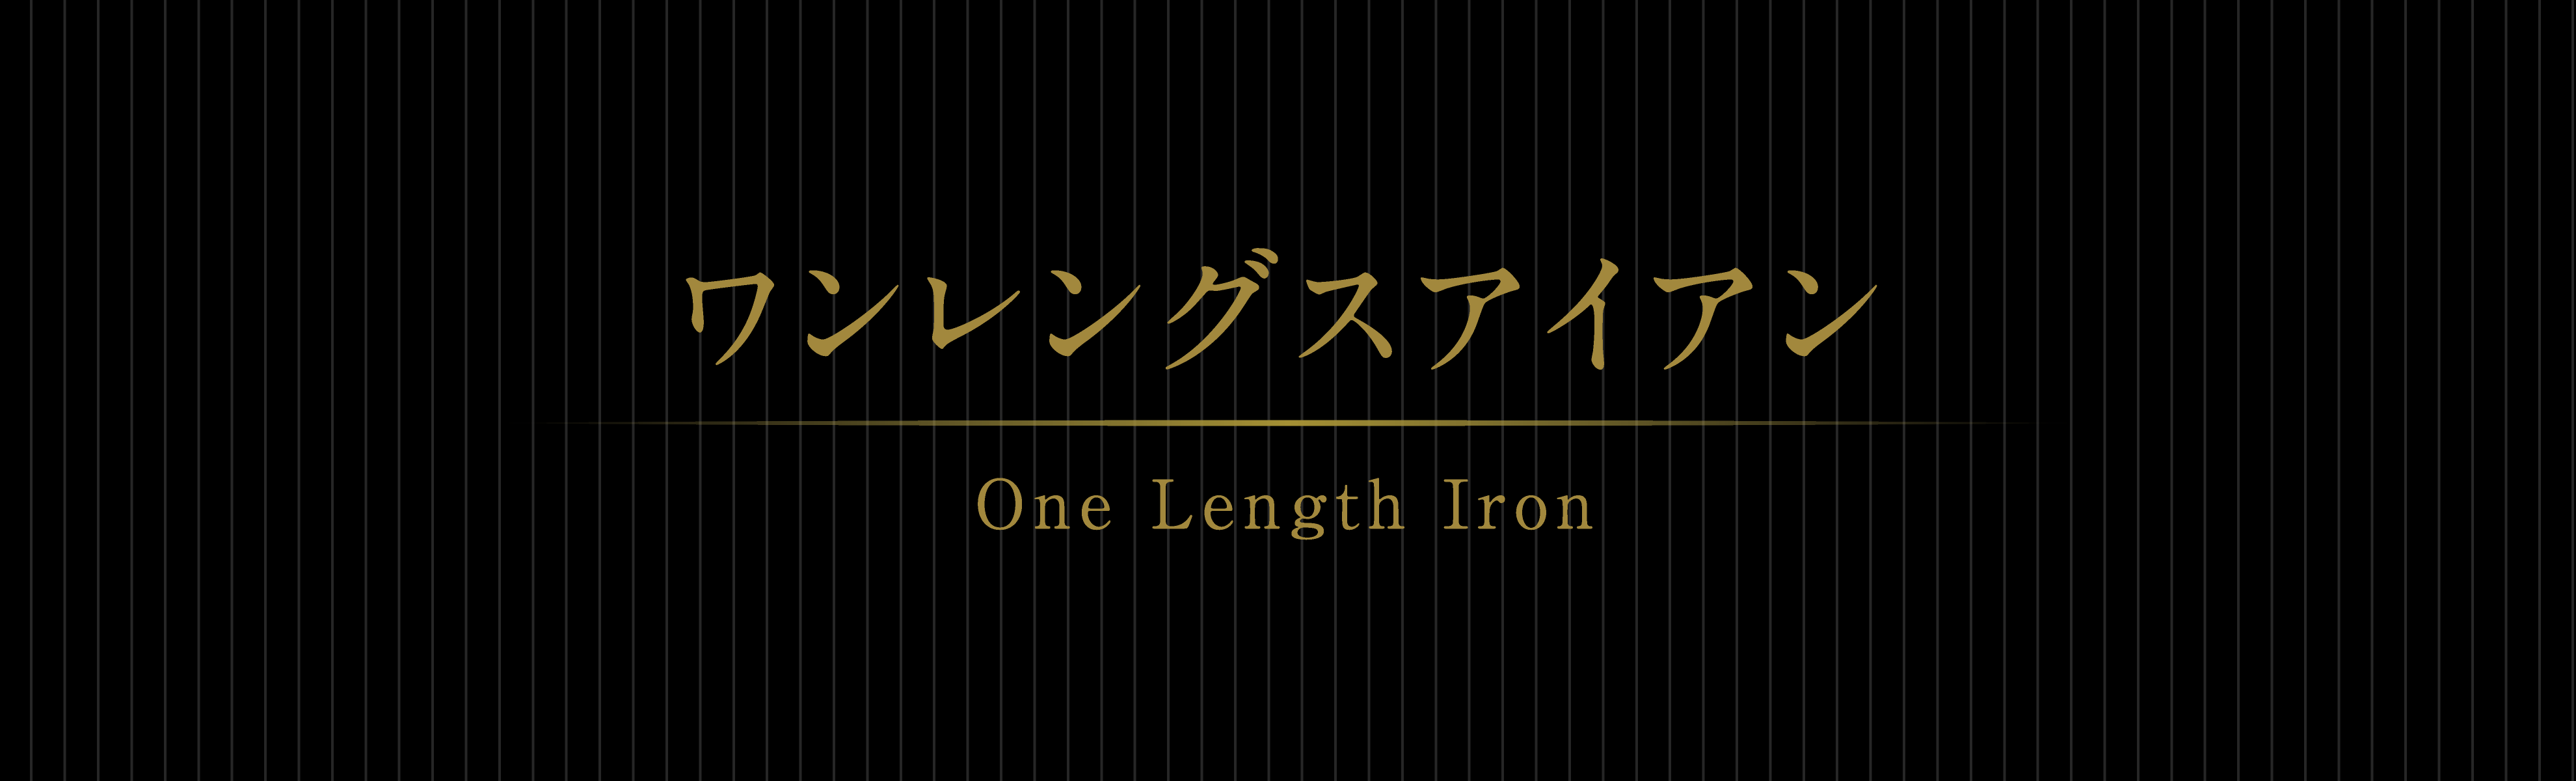 ワンレングスアイアン One Length Iron